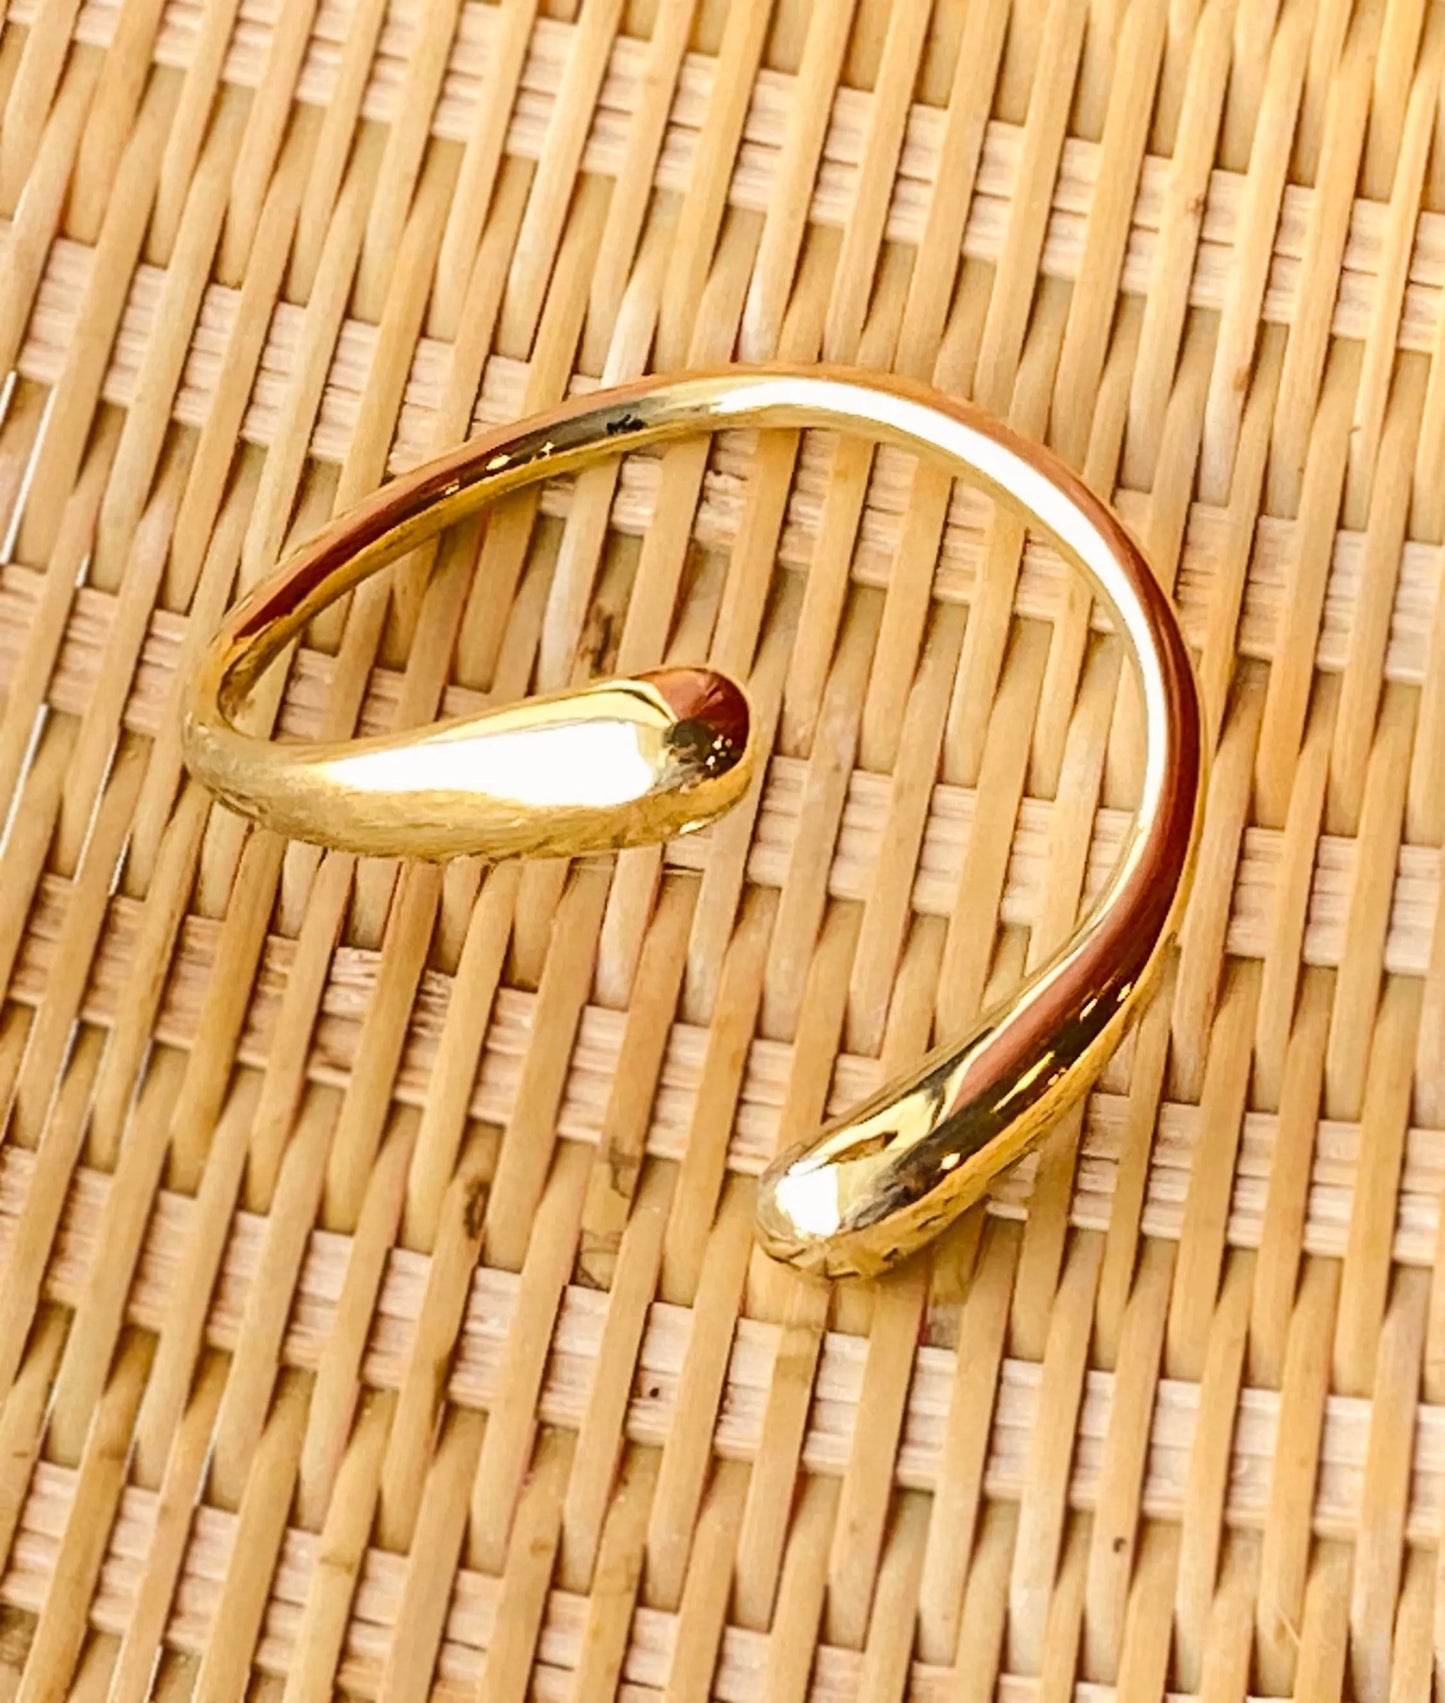 Cuff Bracelet | 'Twist it Up' Fair Trade Jewelry Handcasted in Kenya